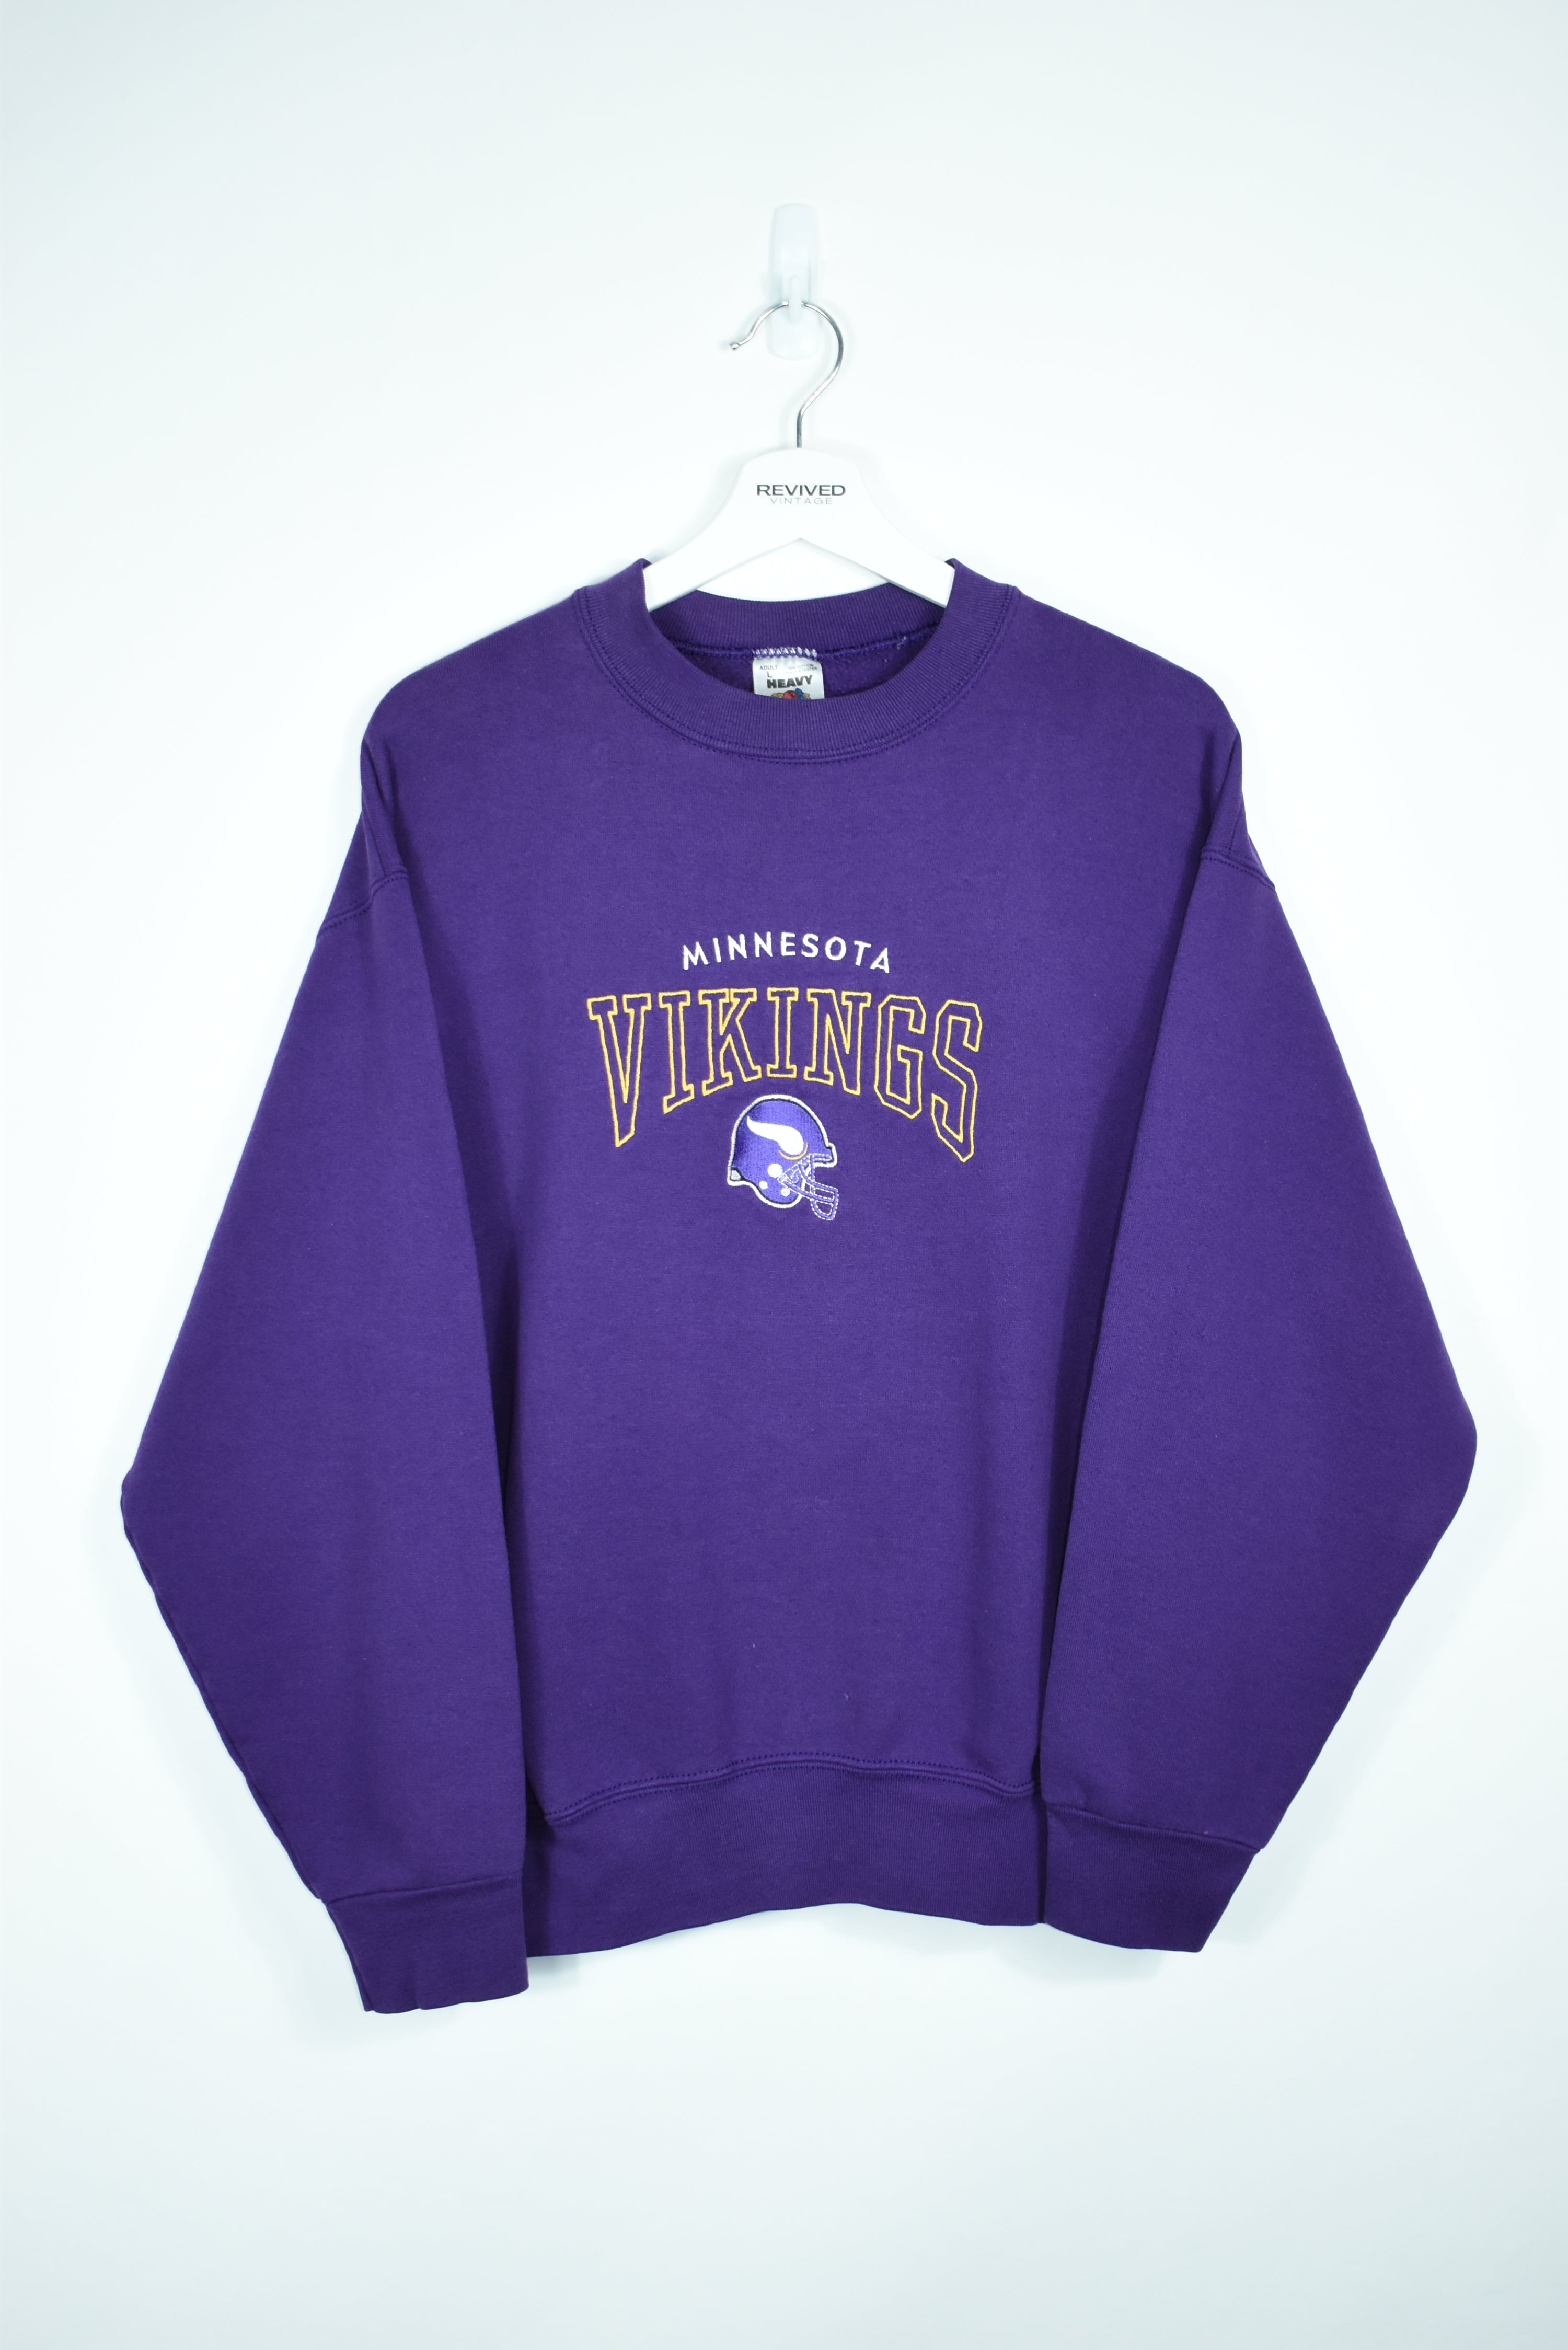 Vintage Minnesota Vikings Embroidery Sweatshirt Medium/ Large